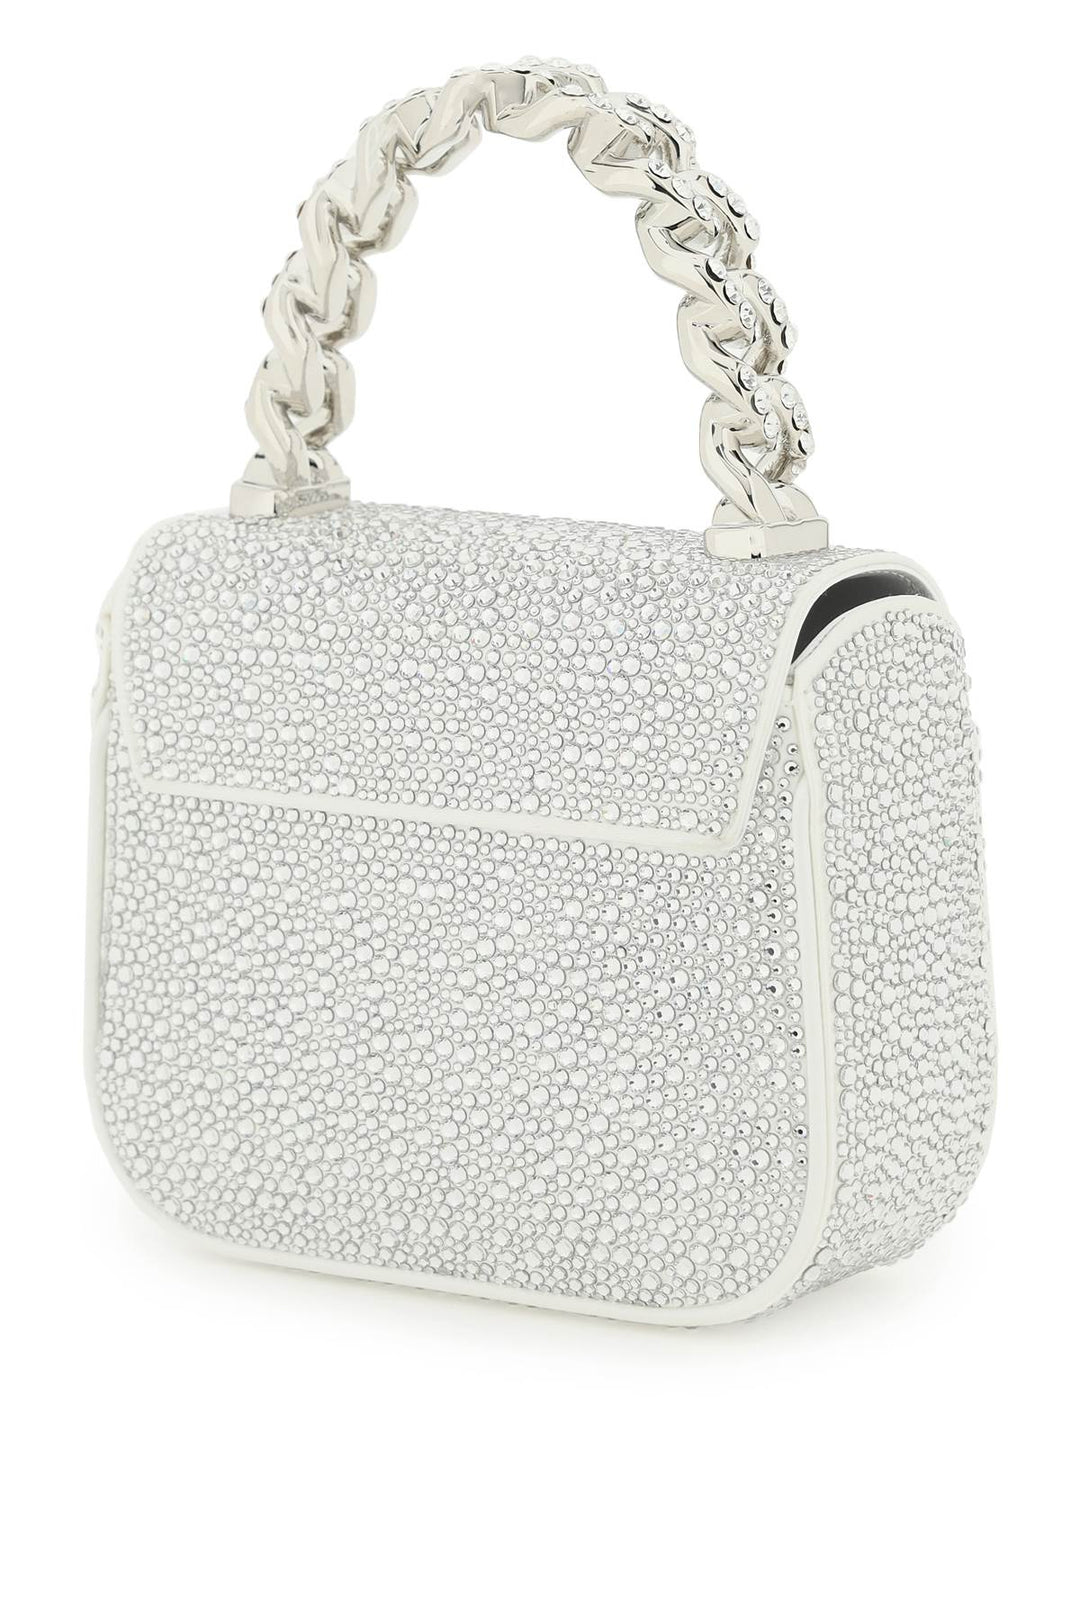 Versace La Medusa Handbag With Crystals   Argento